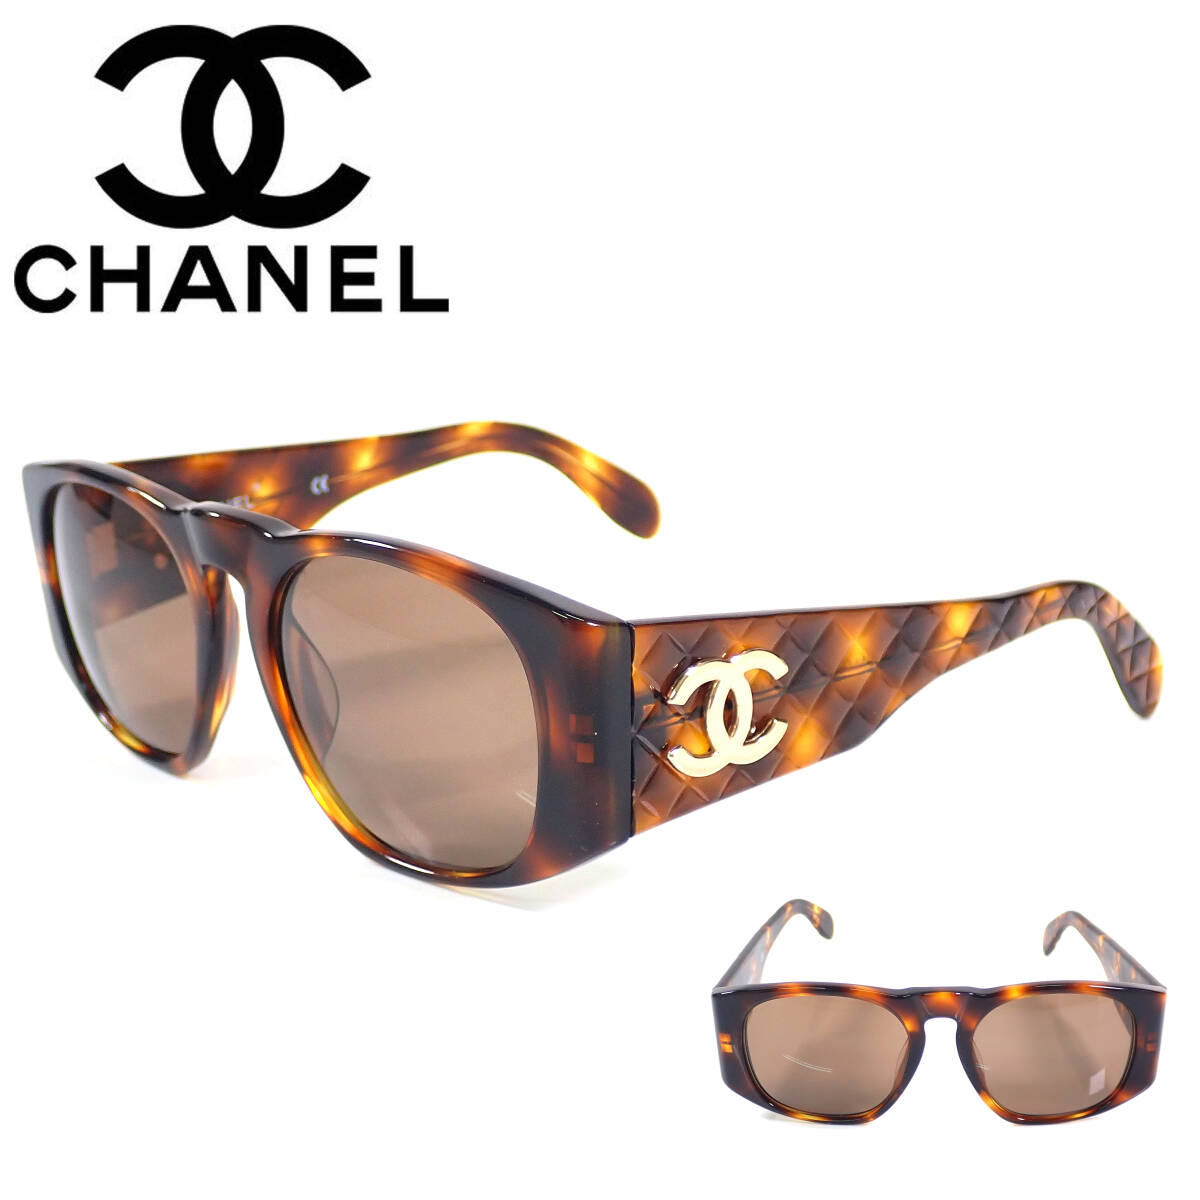  Chanel matelasse here Mark 01450 91235 glasses sunglasses 